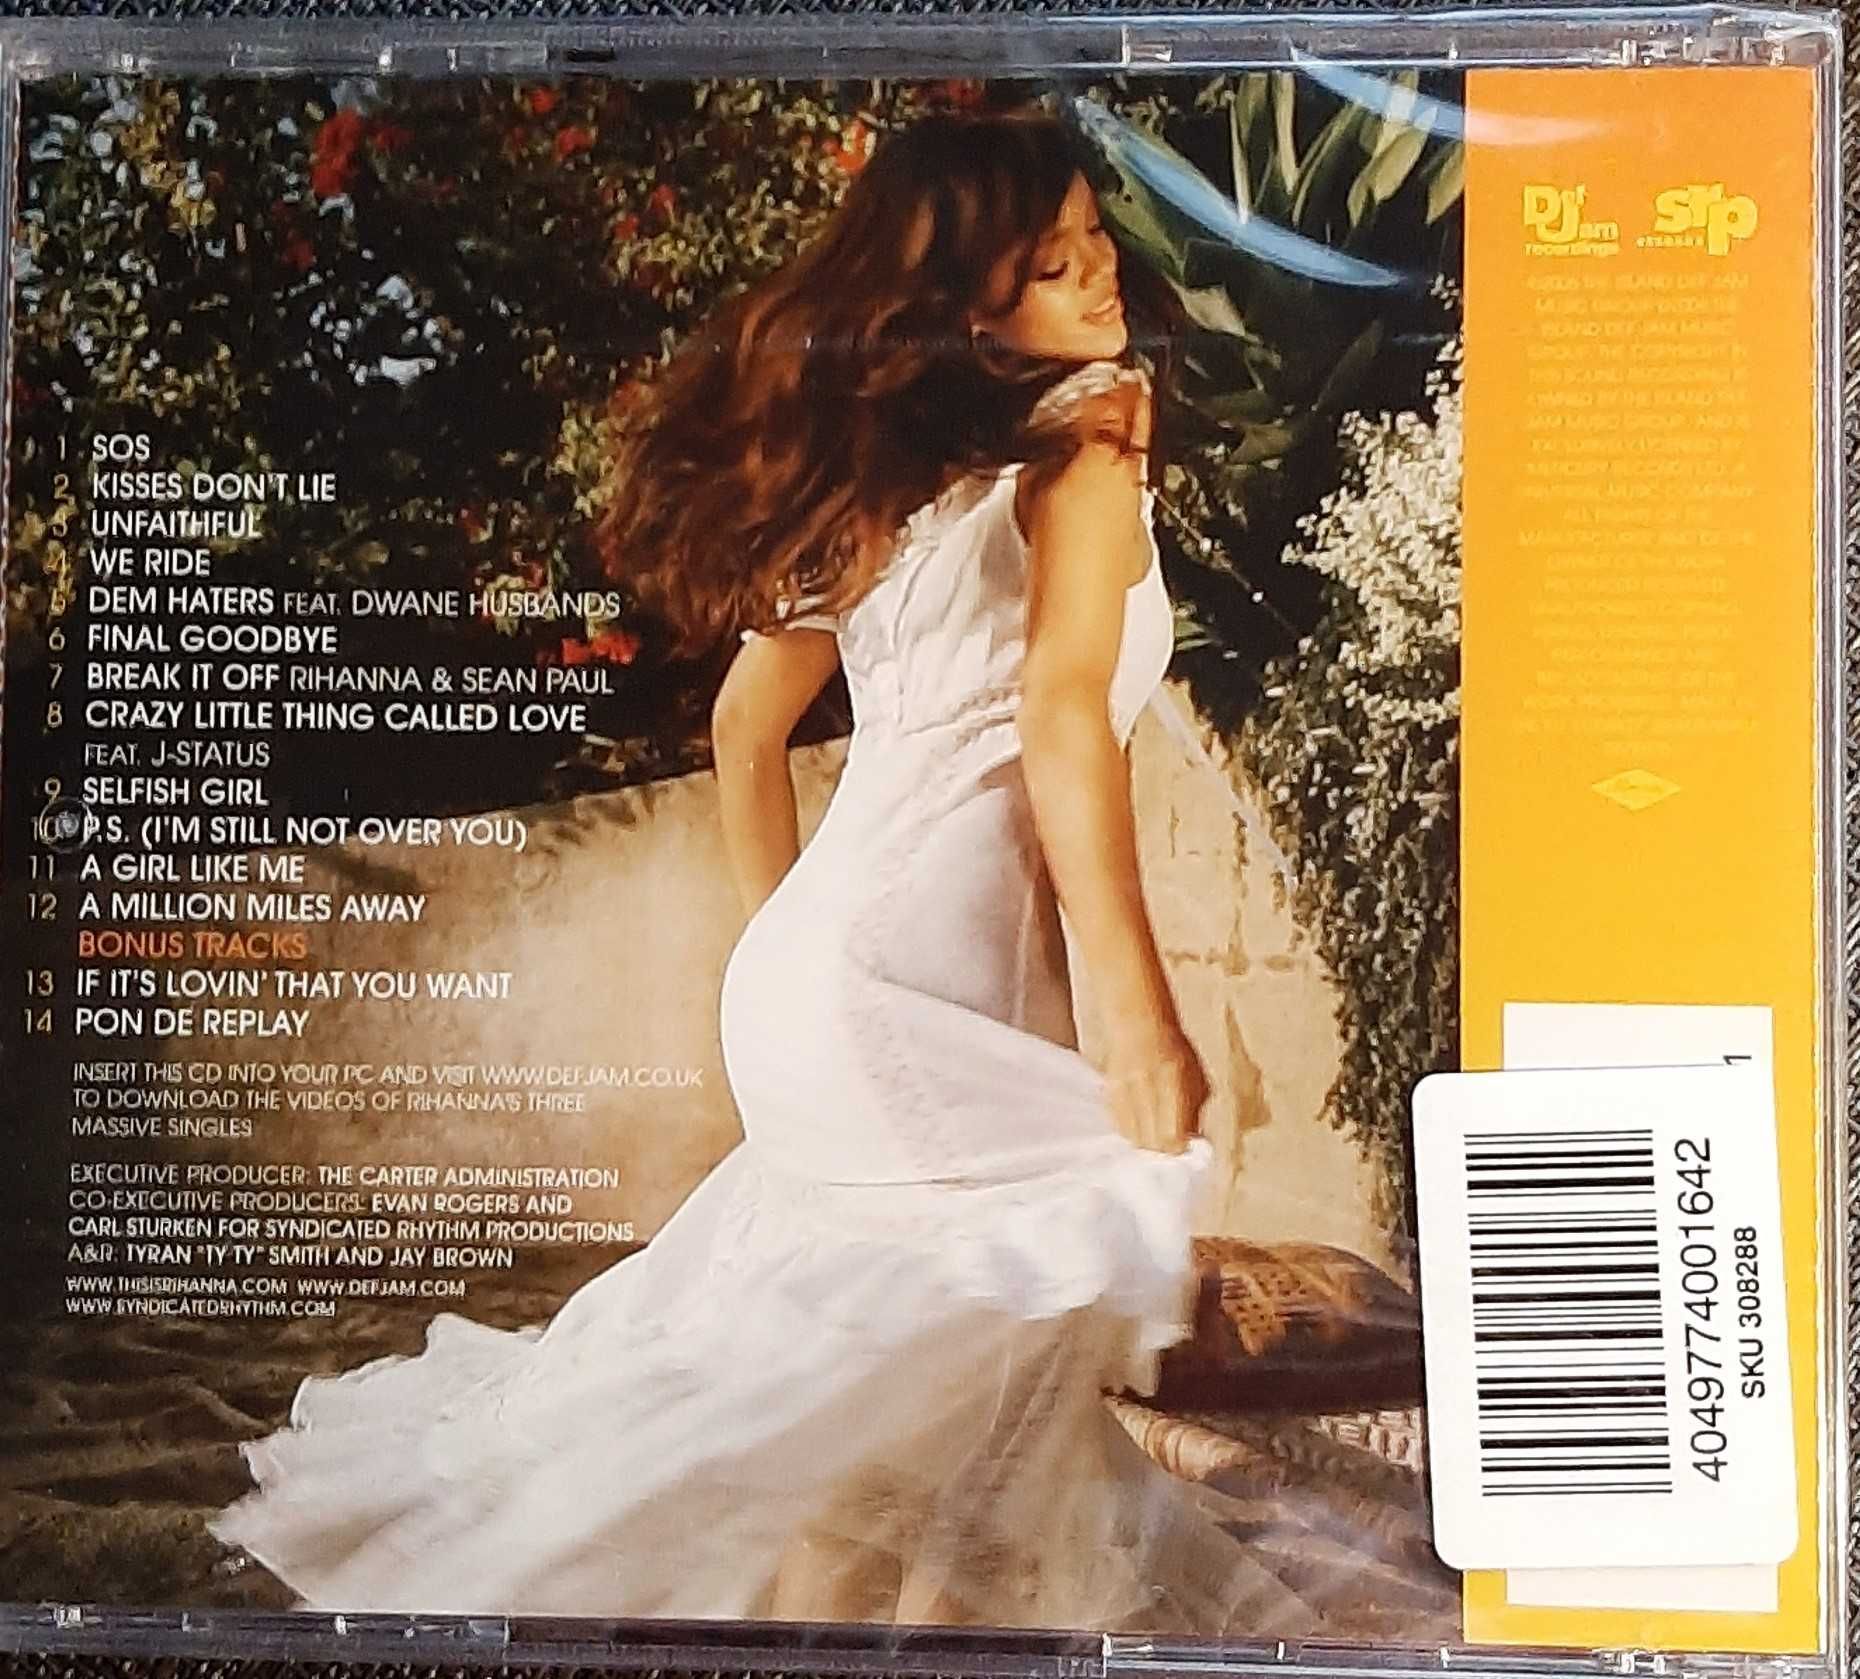 Polecam Album CD RIHANNA  Album- A Girl Like Me CD